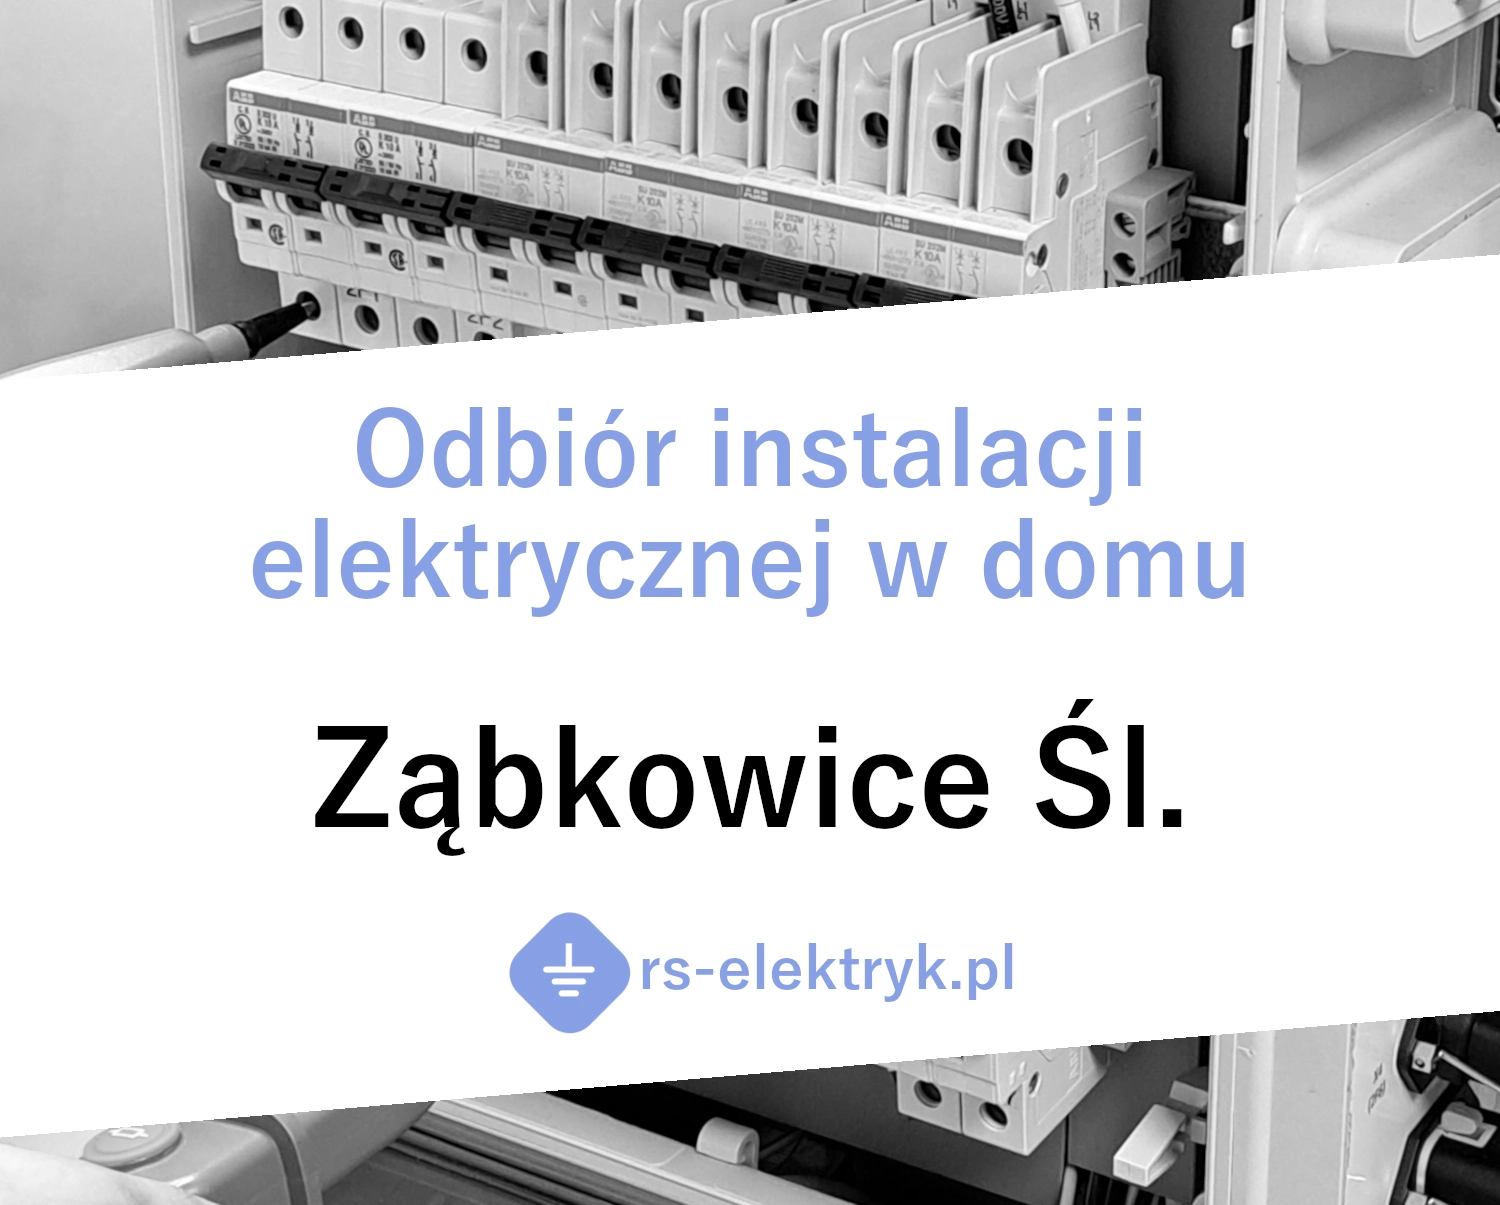 Odbiór instalacji elektrycznej w domu Ząbkowice Śląskie